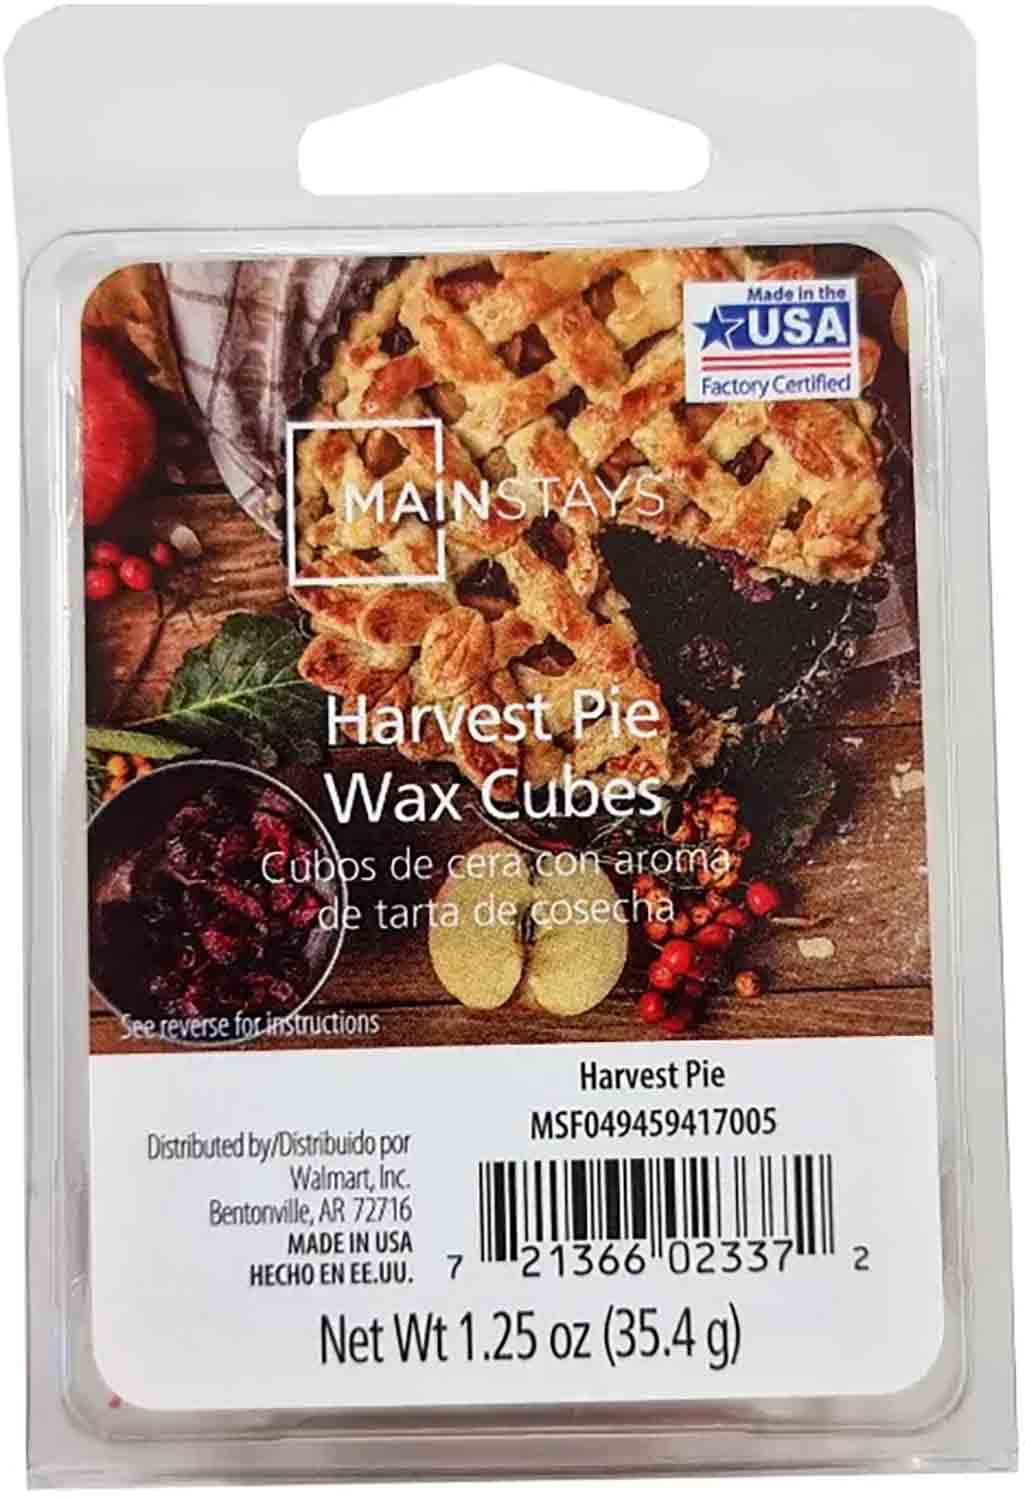 Harvest Pie vonný vosk Mainstays